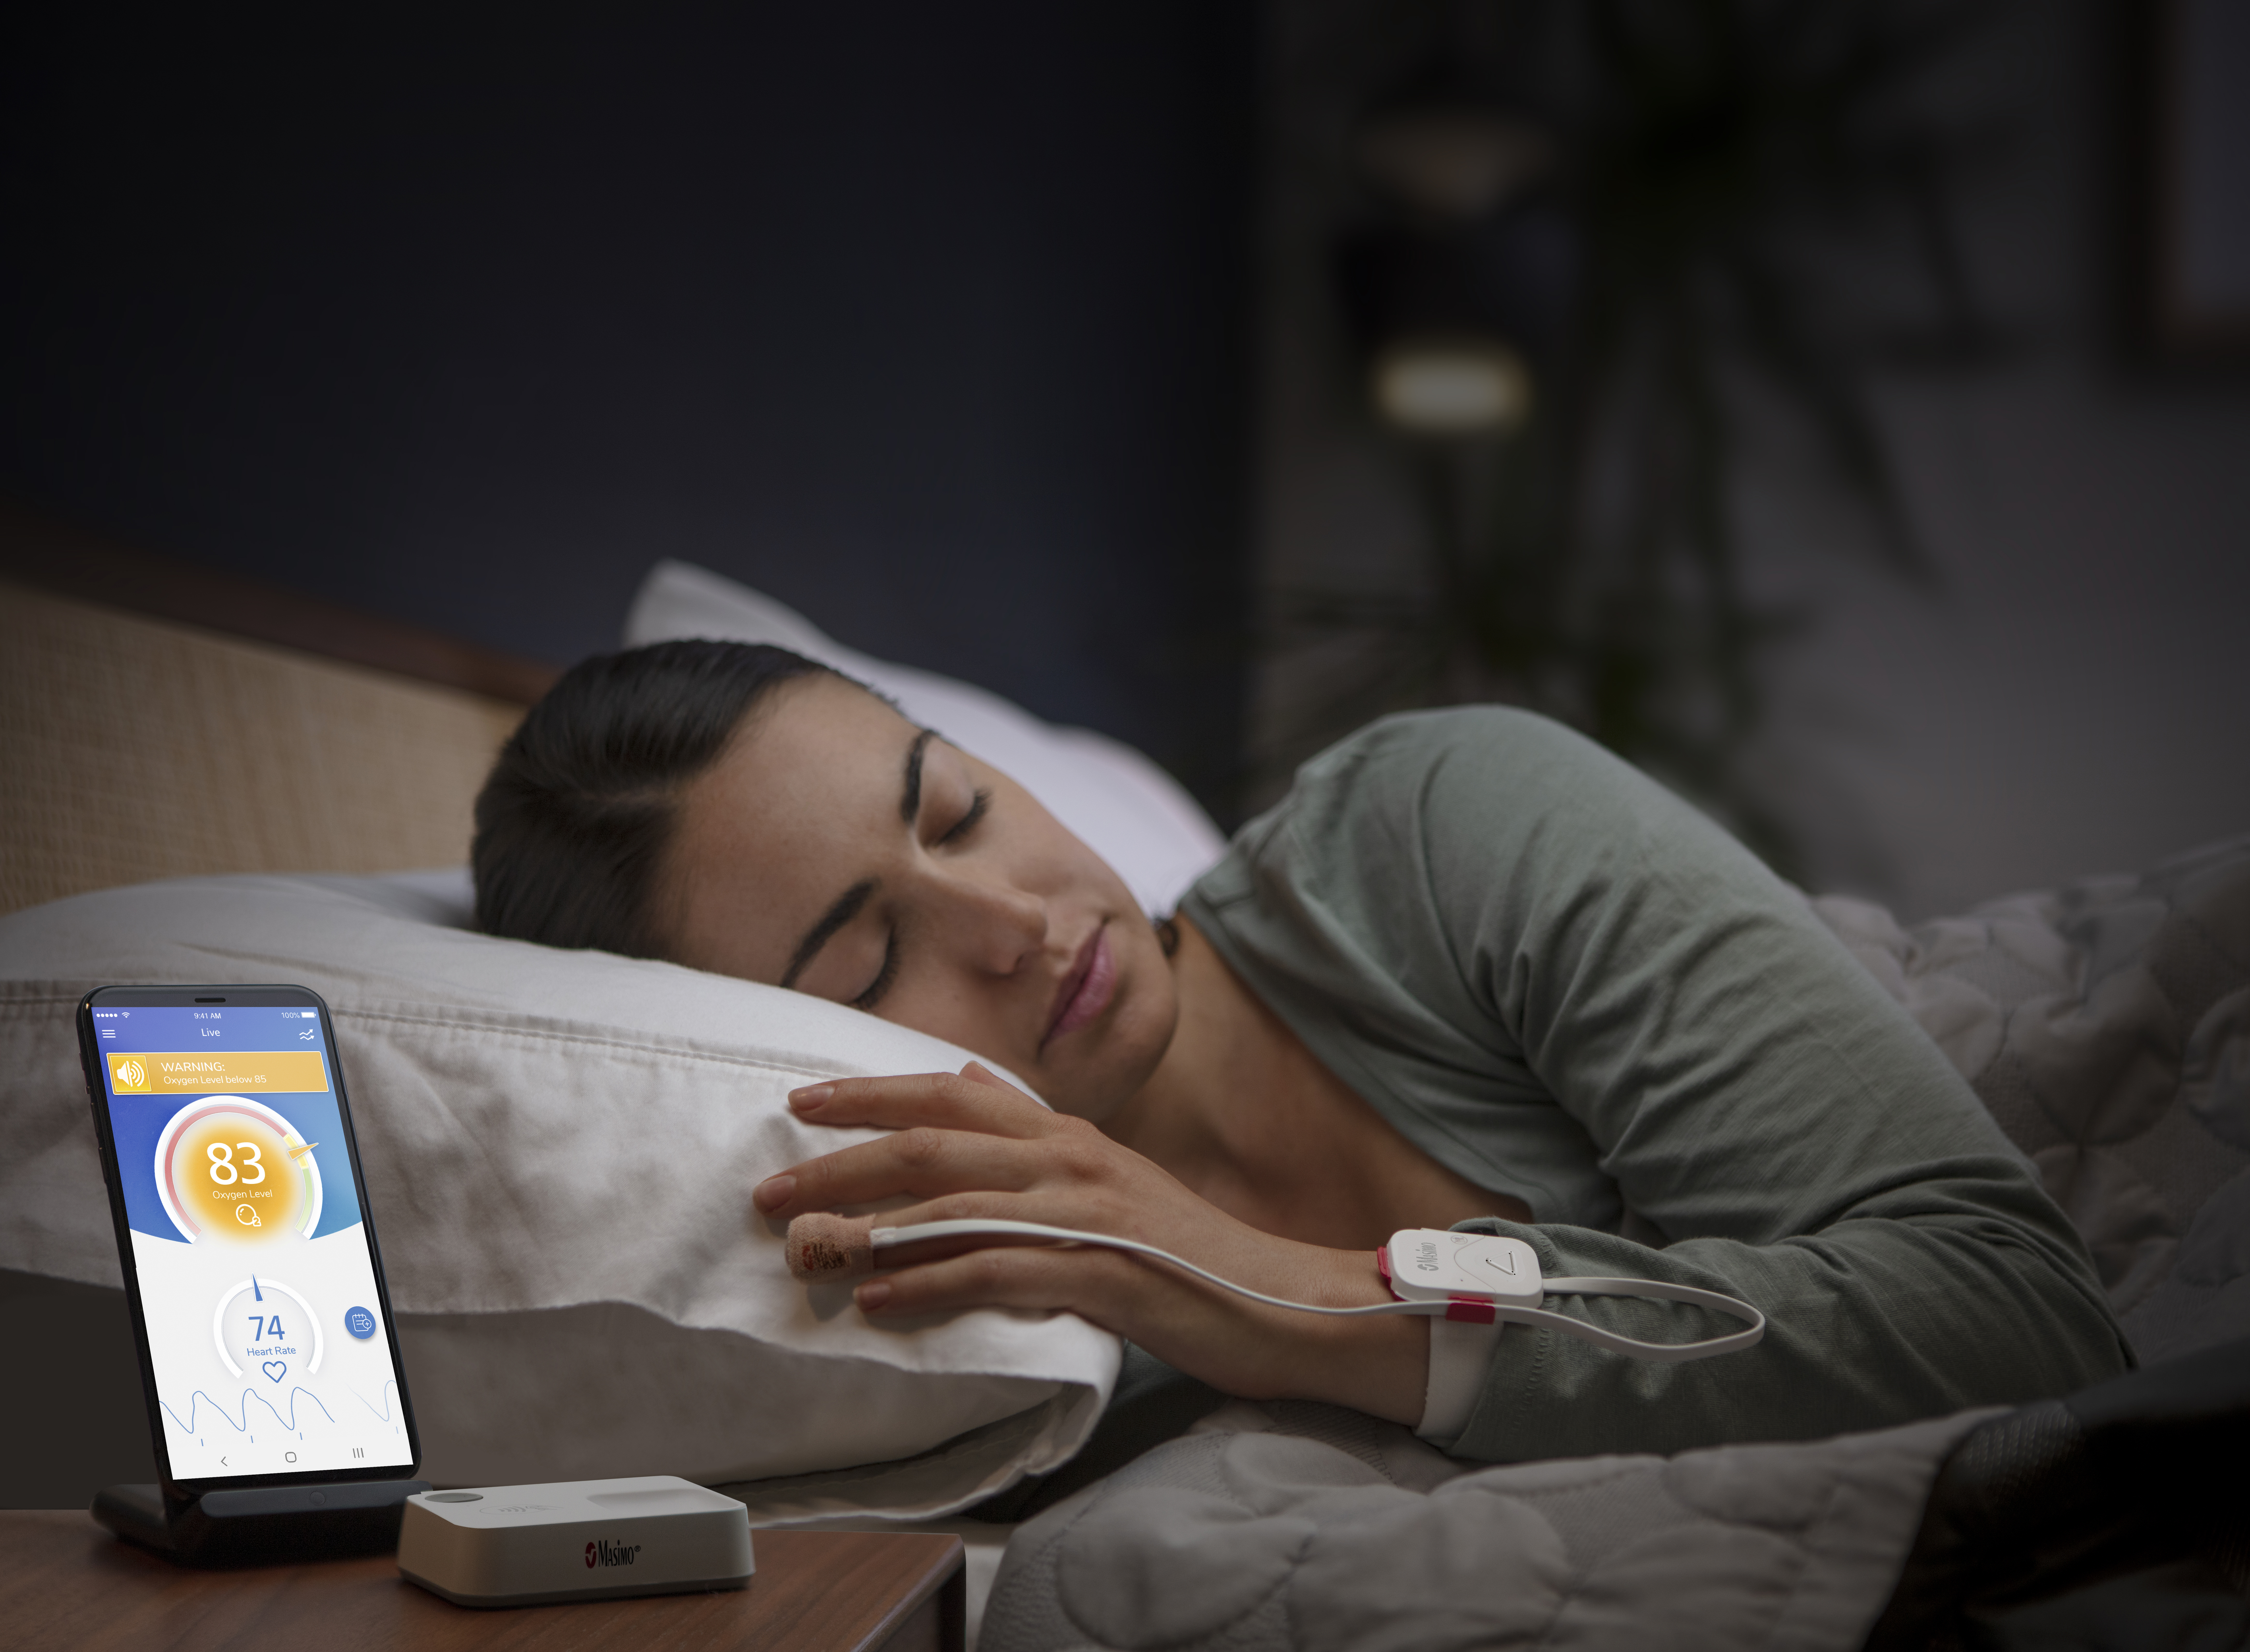 Eine Frau im Bett mit angelegtem Safetynet Alert, daneben ihr Mobiltelefon, auf dem der Bildschirm der Safetynet App anzeigt wird